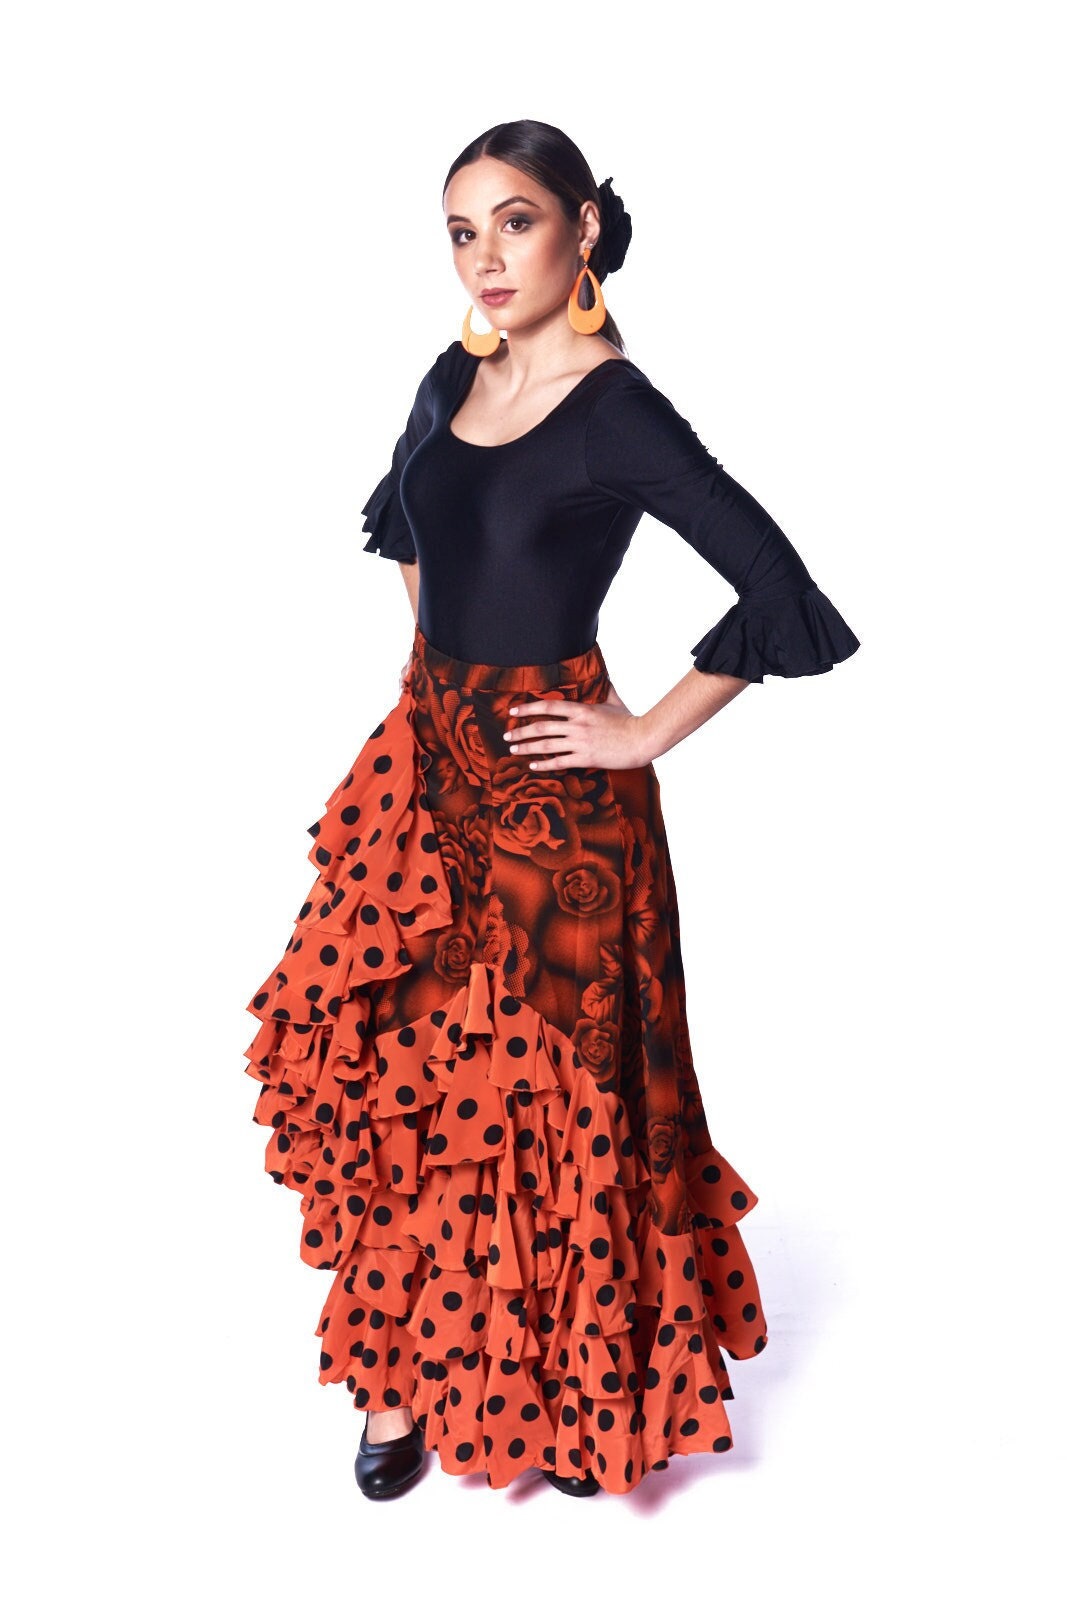 Vestido Flamenca Santoña - RollerDanz